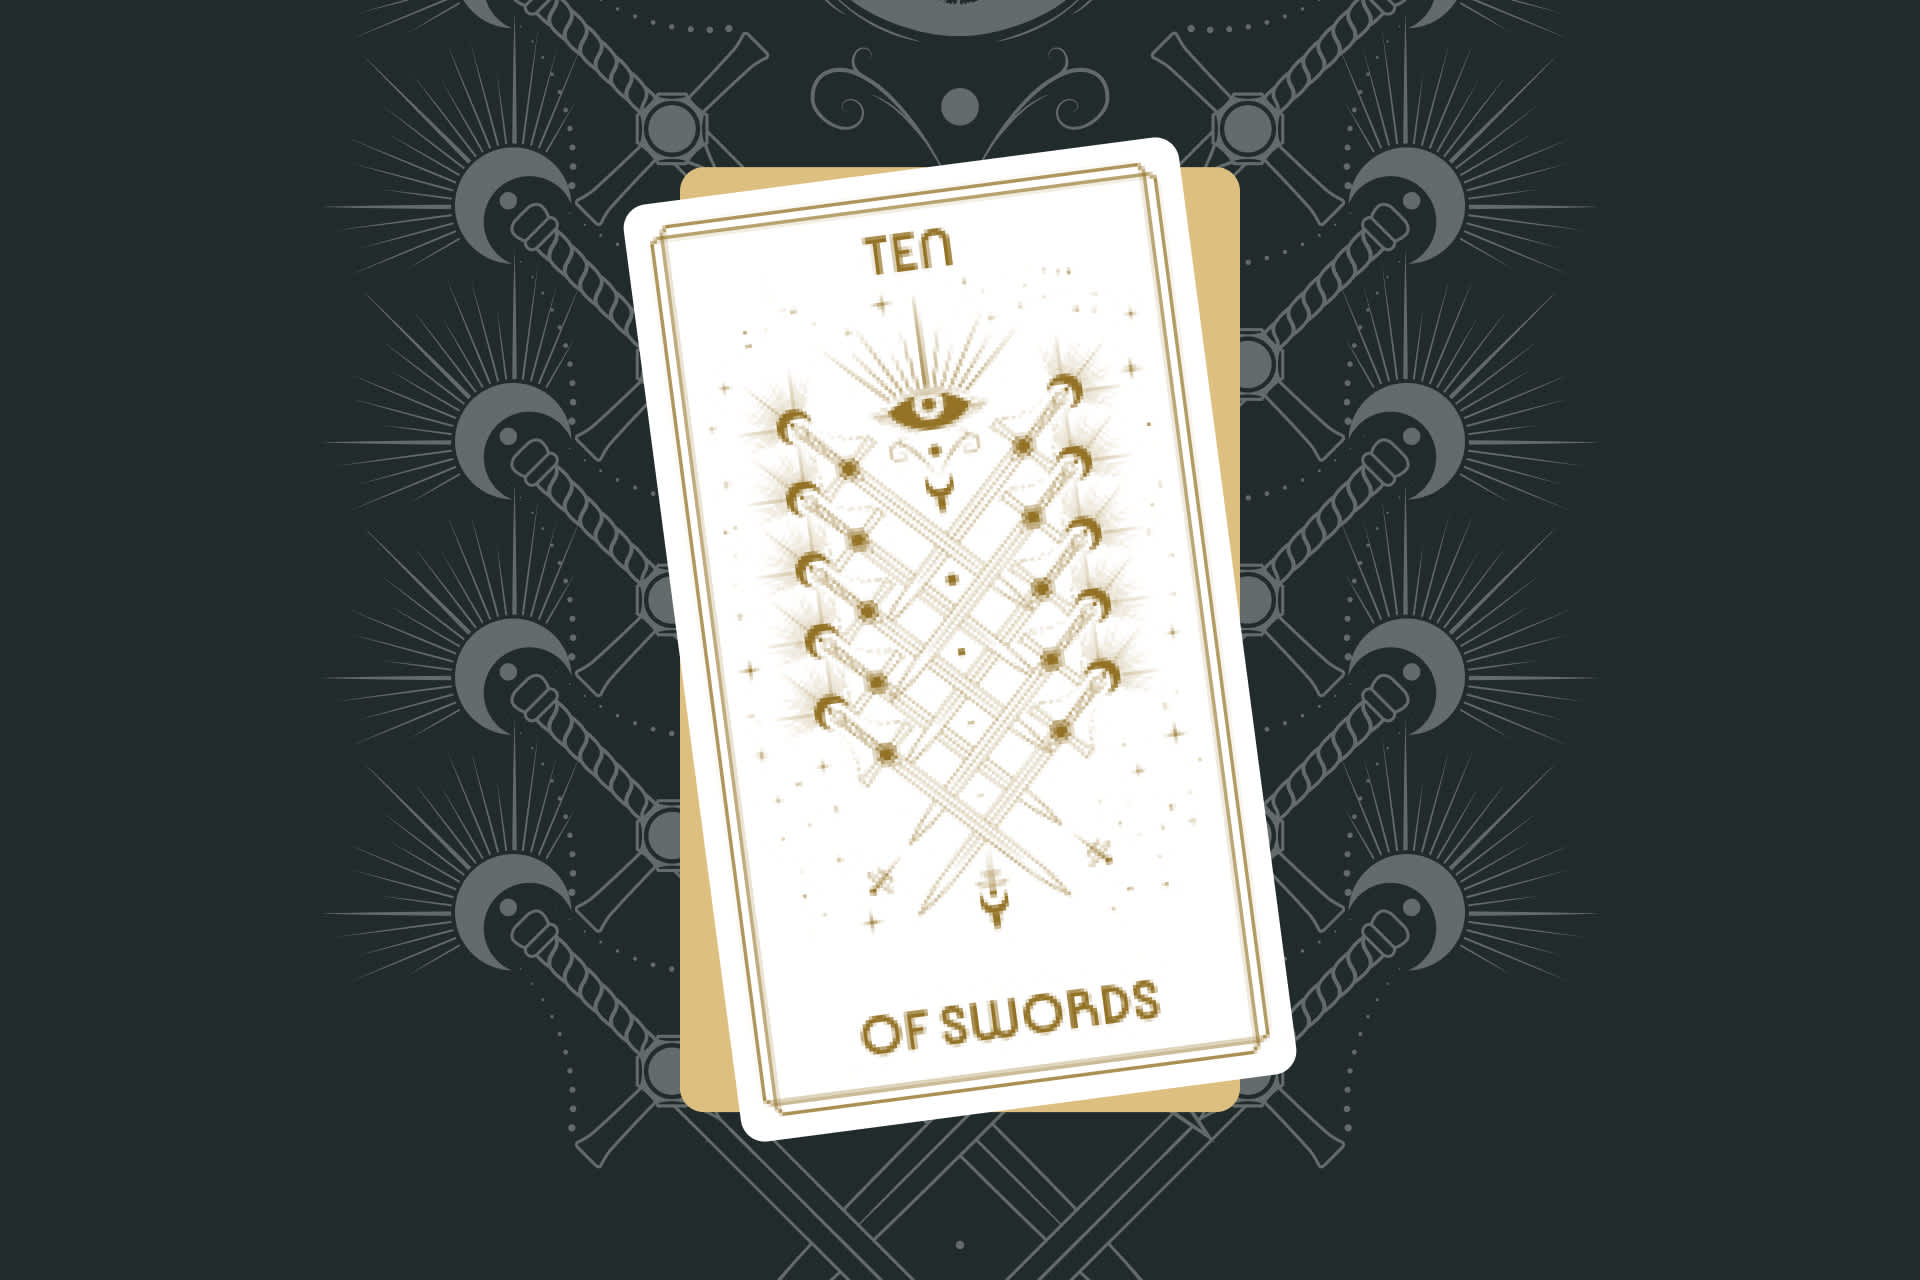 Ten of Swords Tarot Card